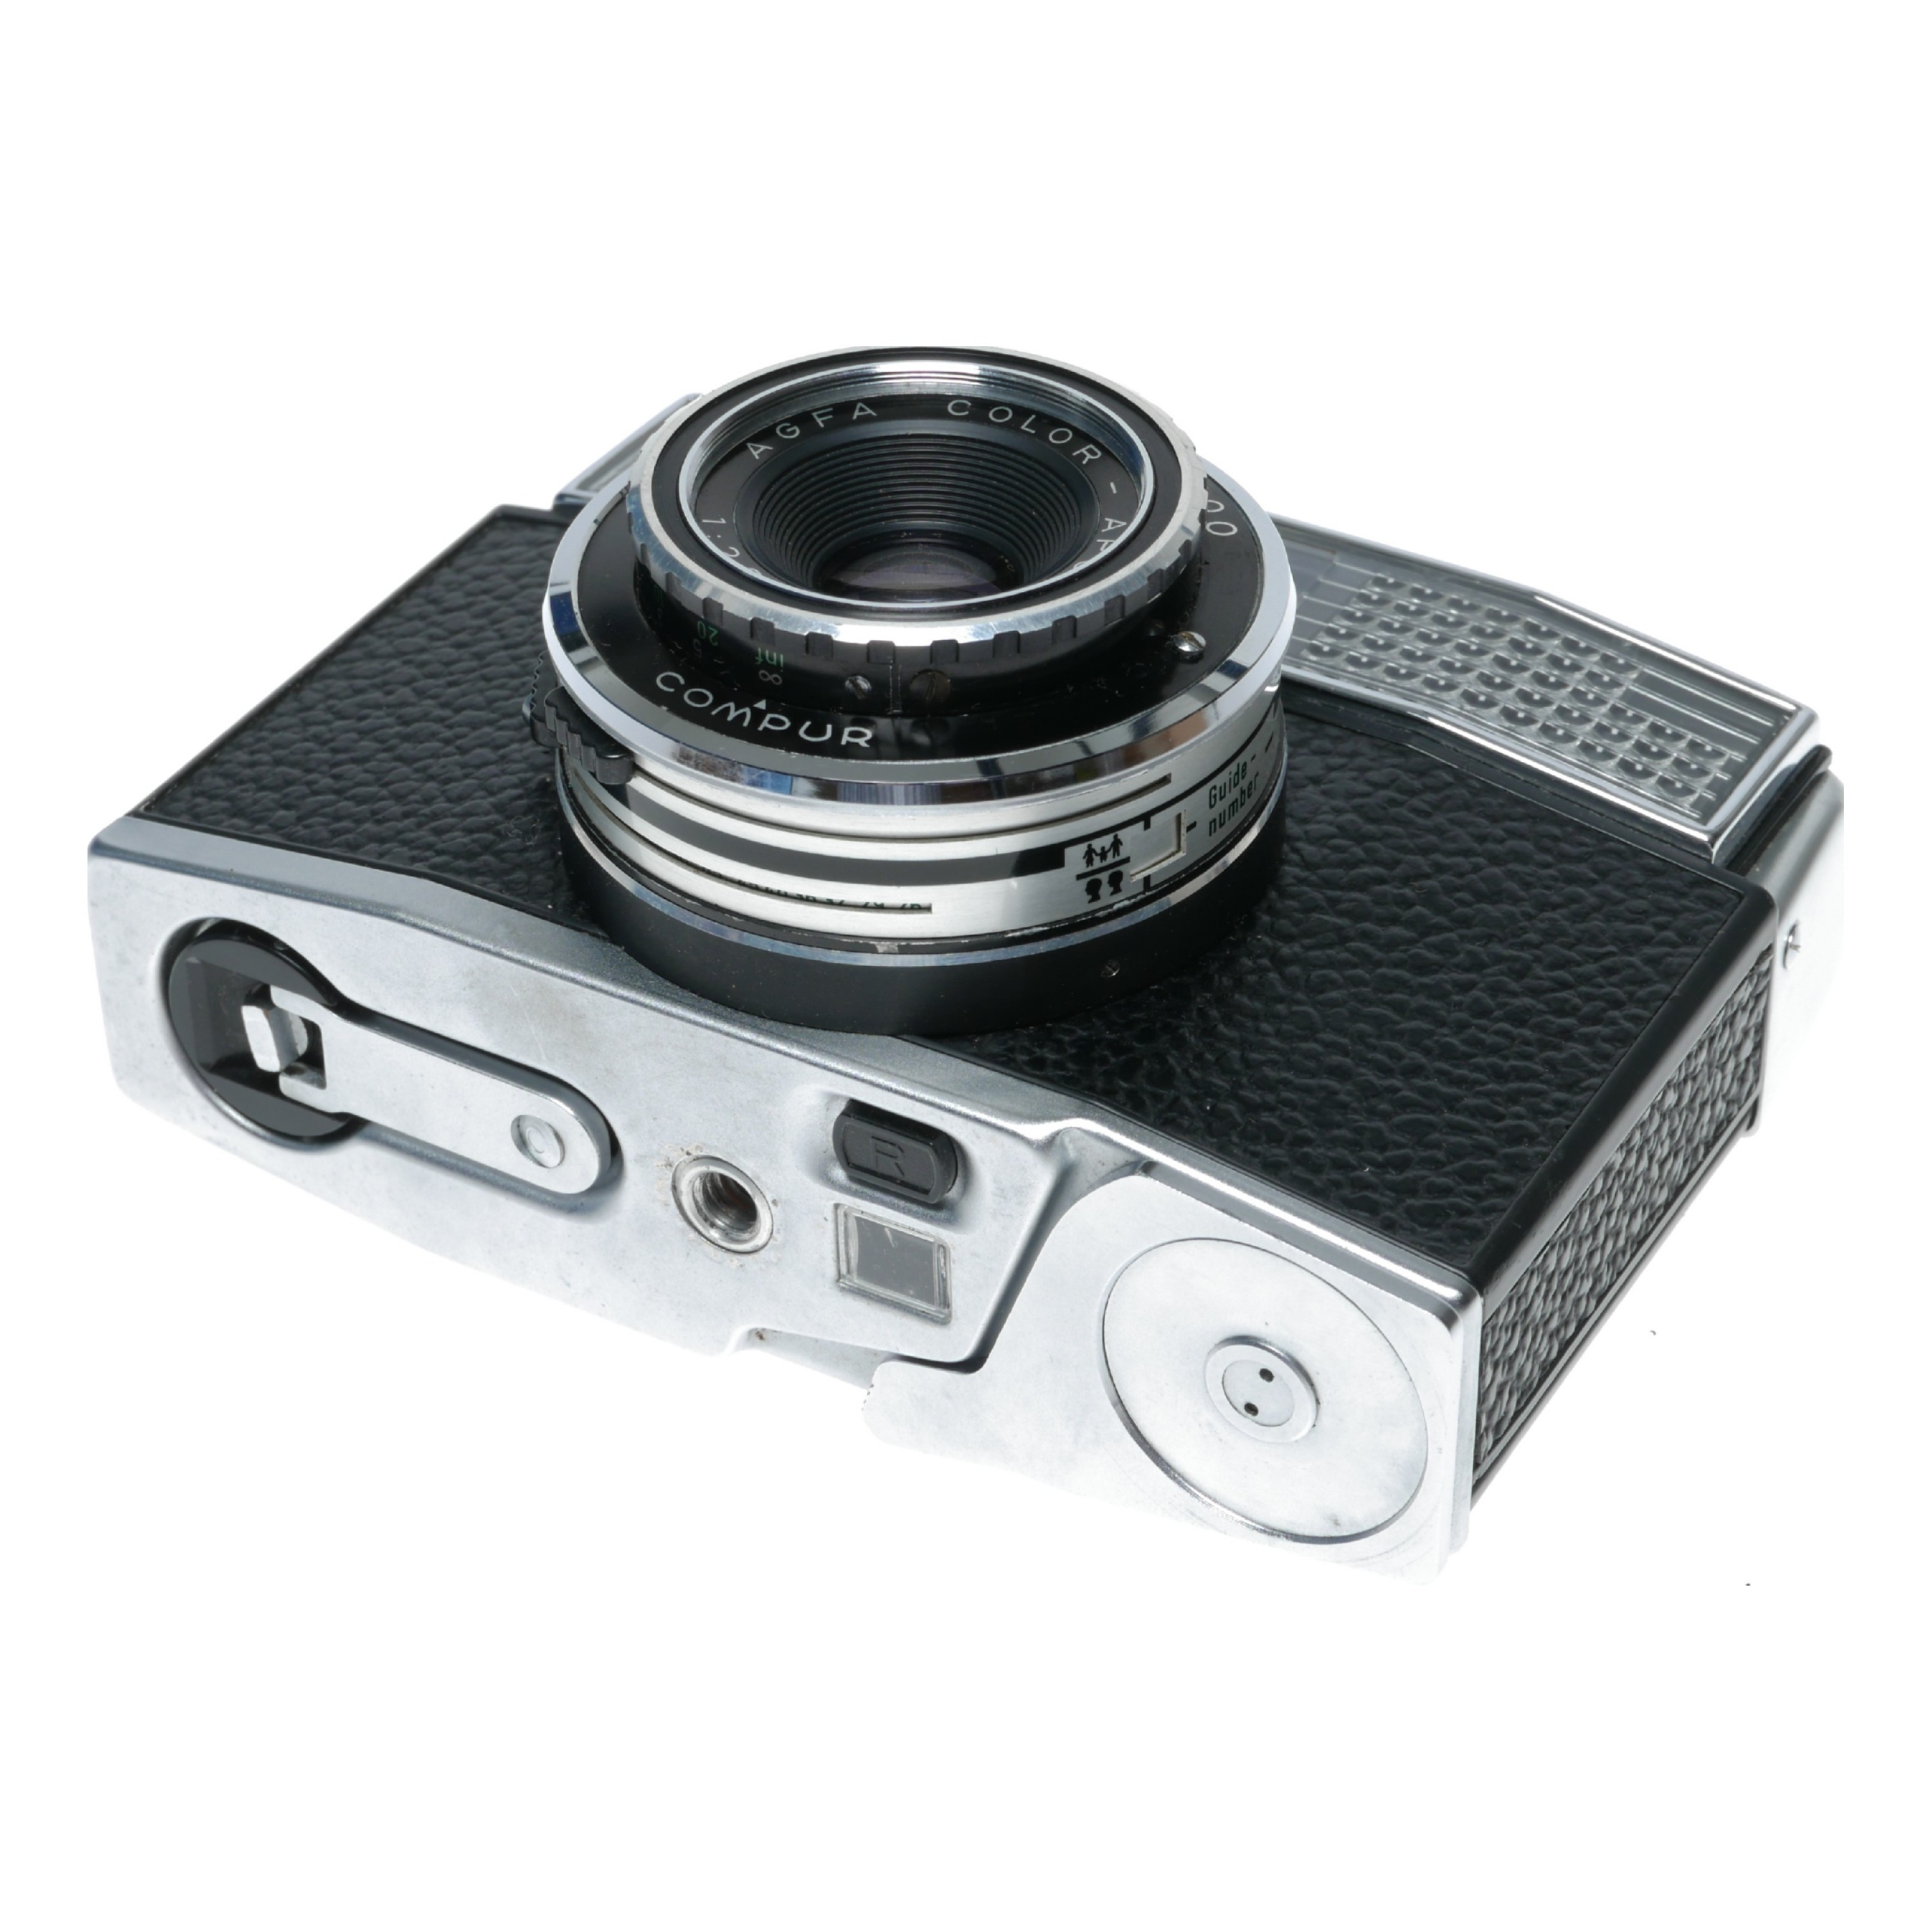 Agfa Agfa Optima 500 35mm Film Camera Color-Apotar 1:2.8/45 Compur 